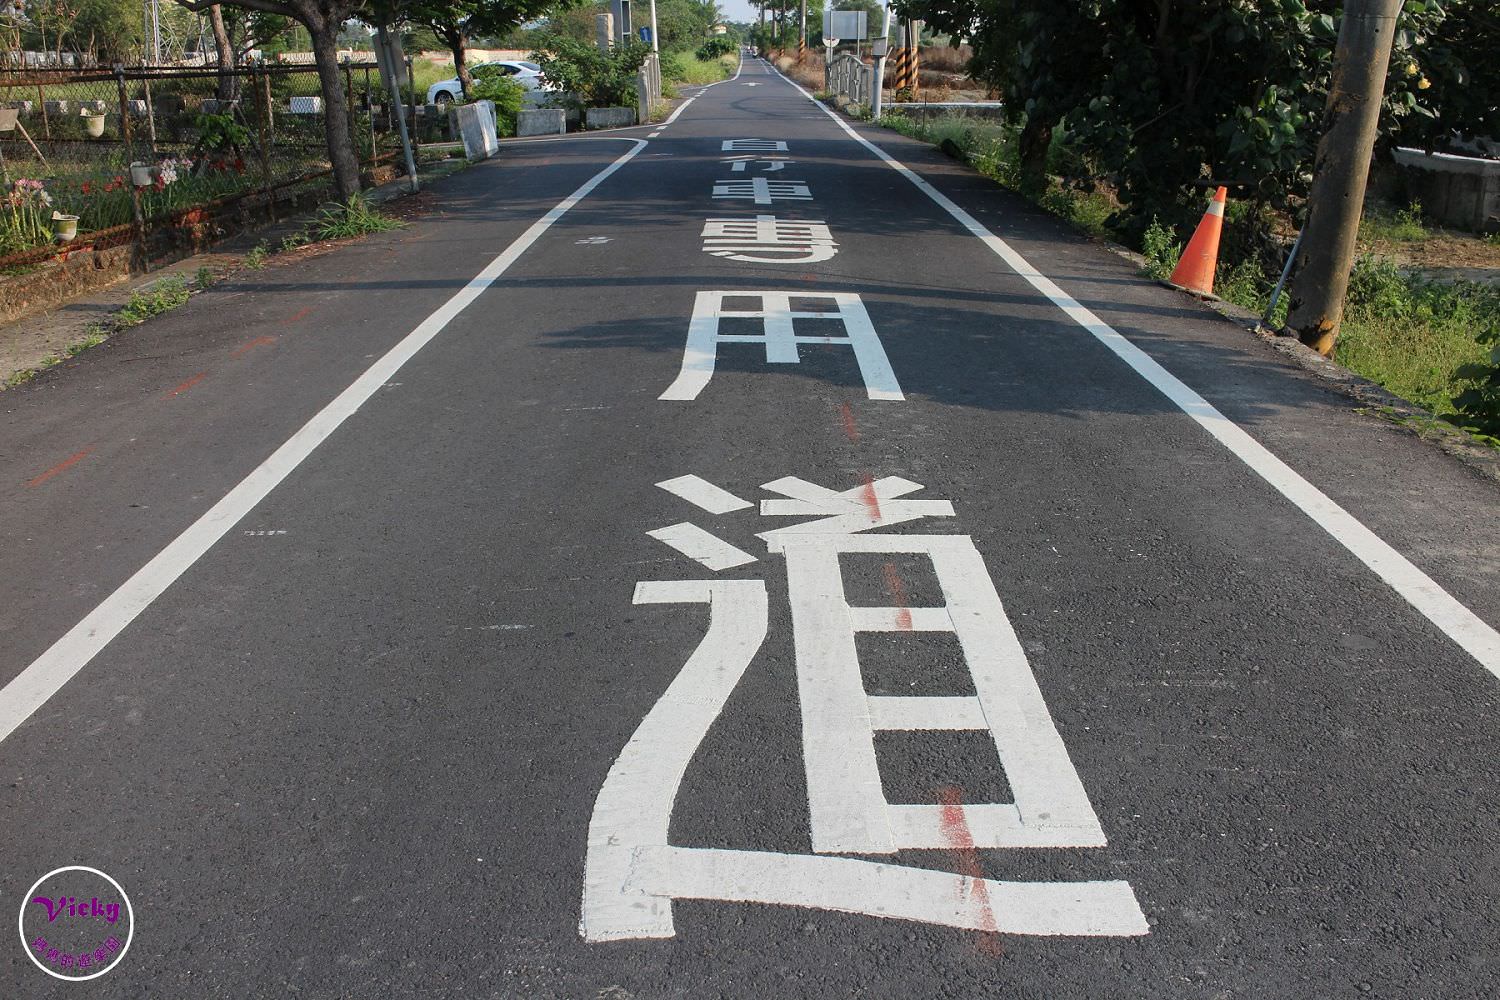 台南景點︱仁德土庫休閒自行車道：秘境中的秘境有著令人著迷的田野風光